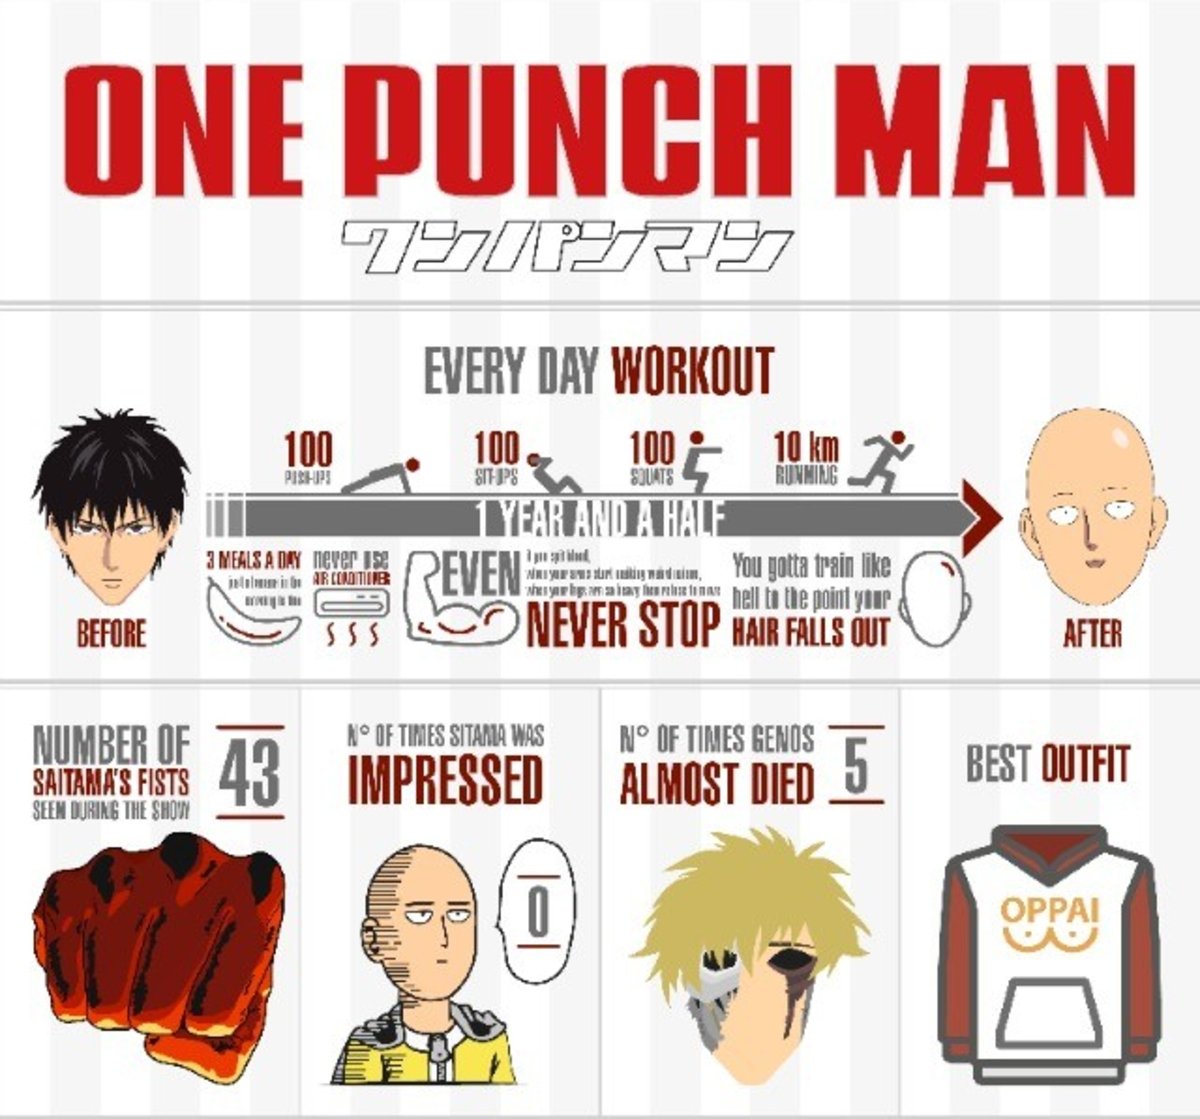 One Punch Man, explicado al detalle en esta infografía